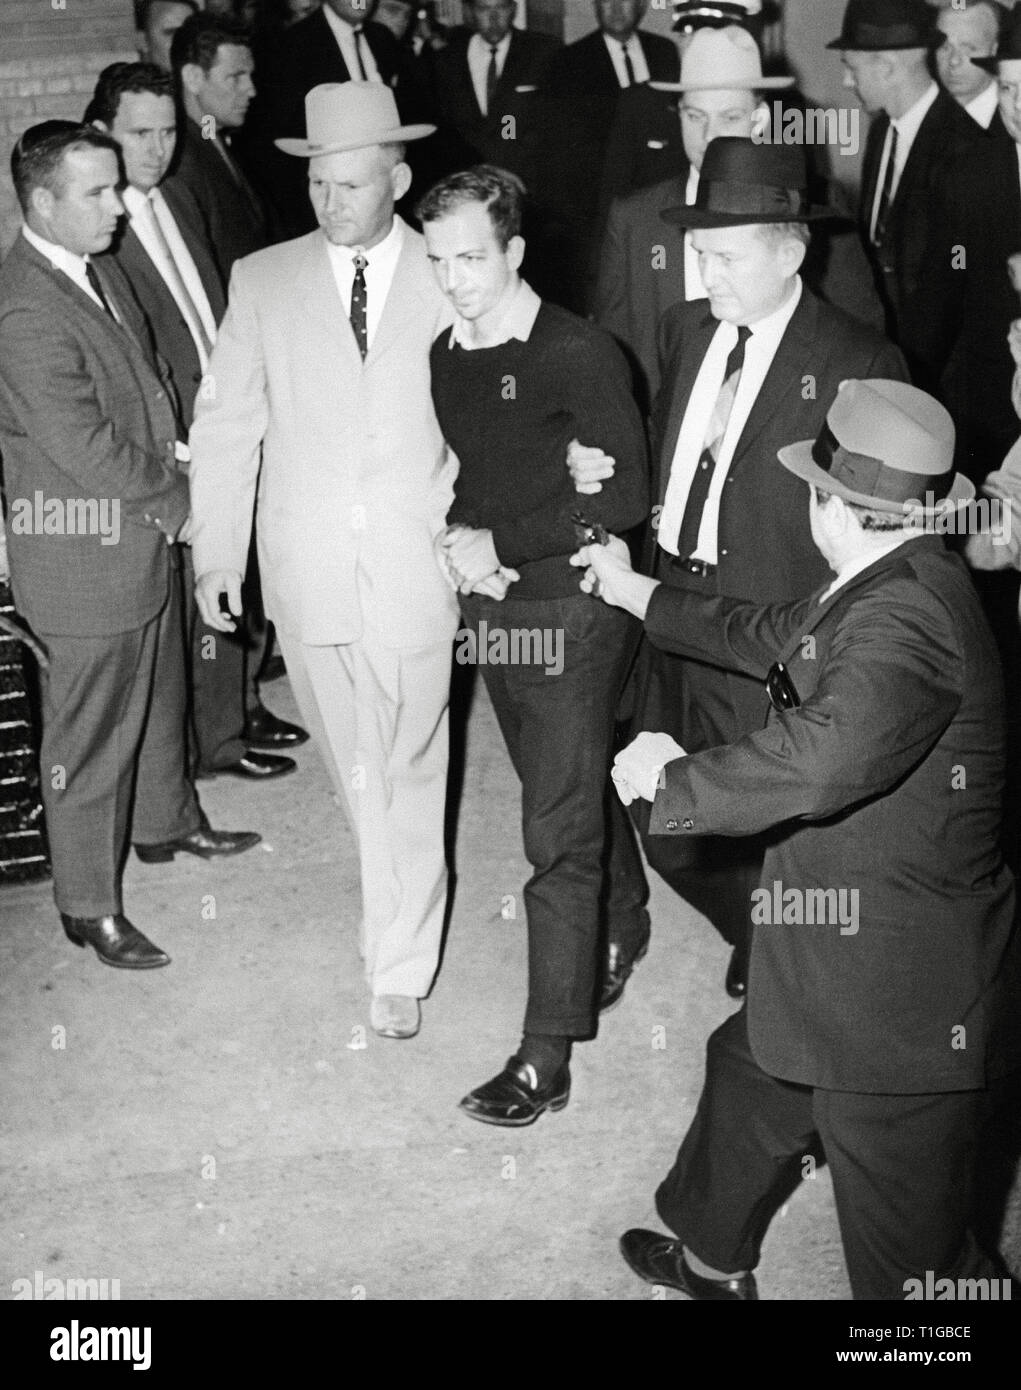 Lee Harvey Oswald filmada por Jack Ruby como Oswald está siendo movido por los detectives de la policía de Dallas Jim Leavelle y L. C. Fosas Comunes, 24 de noviembre de 1963 Archivo de referencia # 1003 811tha Foto de stock